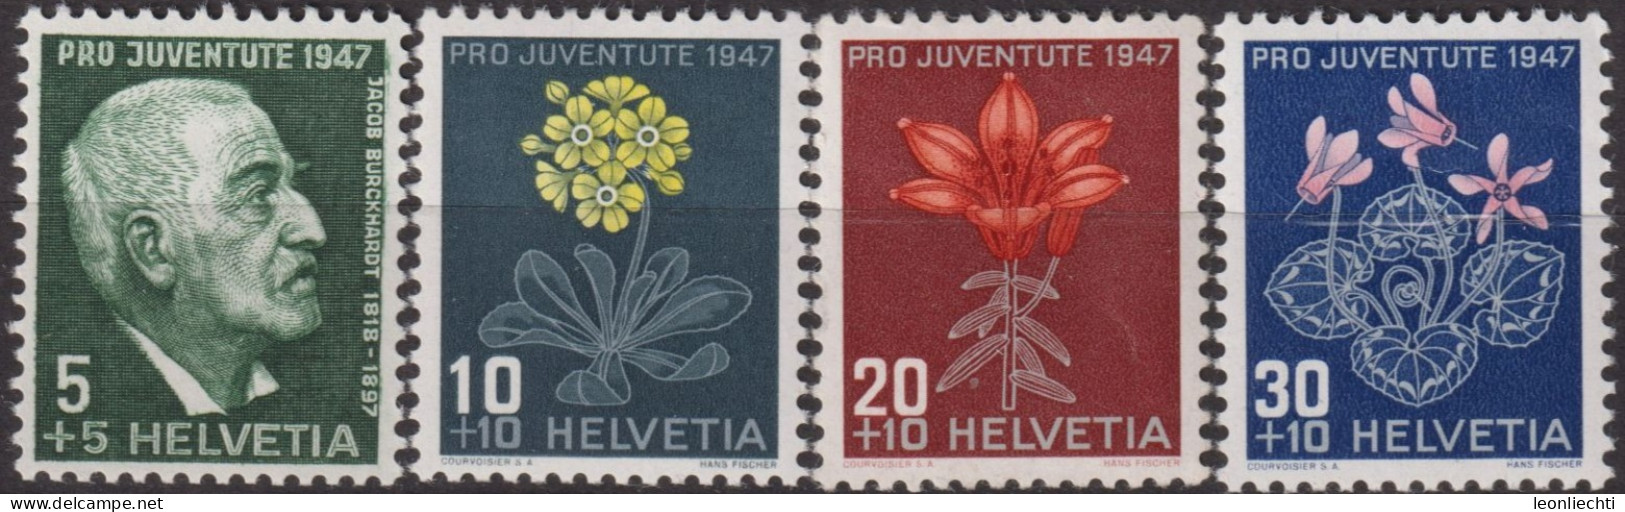 1947 Schweiz Pro Juventute ** Mi:CH 488-491, Yt:CH 445-448, Zum:CH J121-J124, J. Burckhardt Und Alpenblumen - Ungebraucht